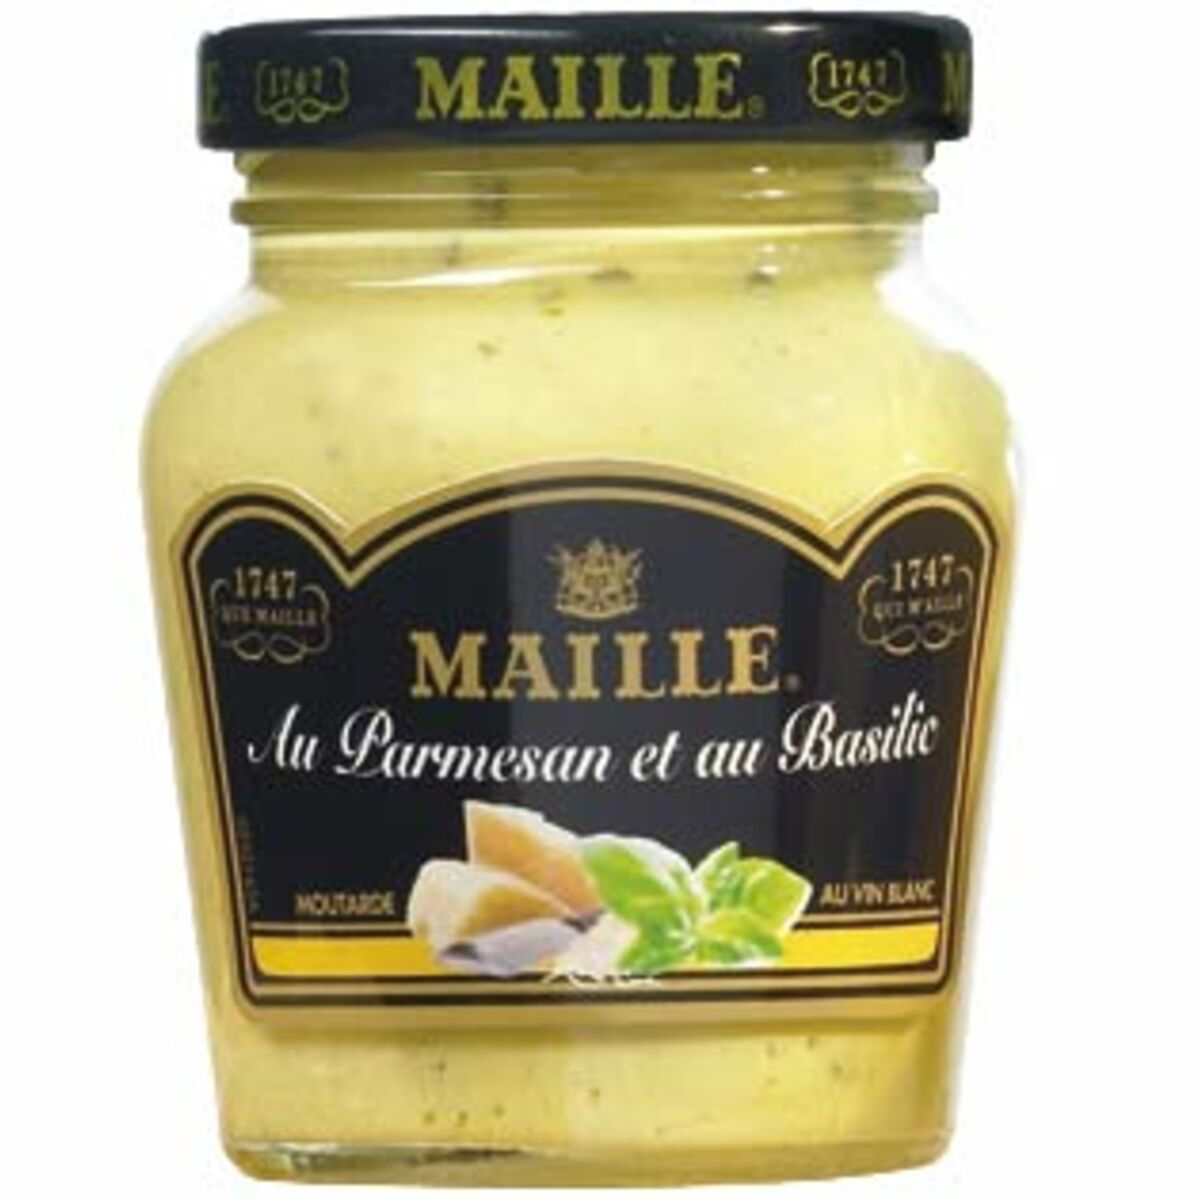 La moutarde change de parfum : Femme Actuelle Le MAG